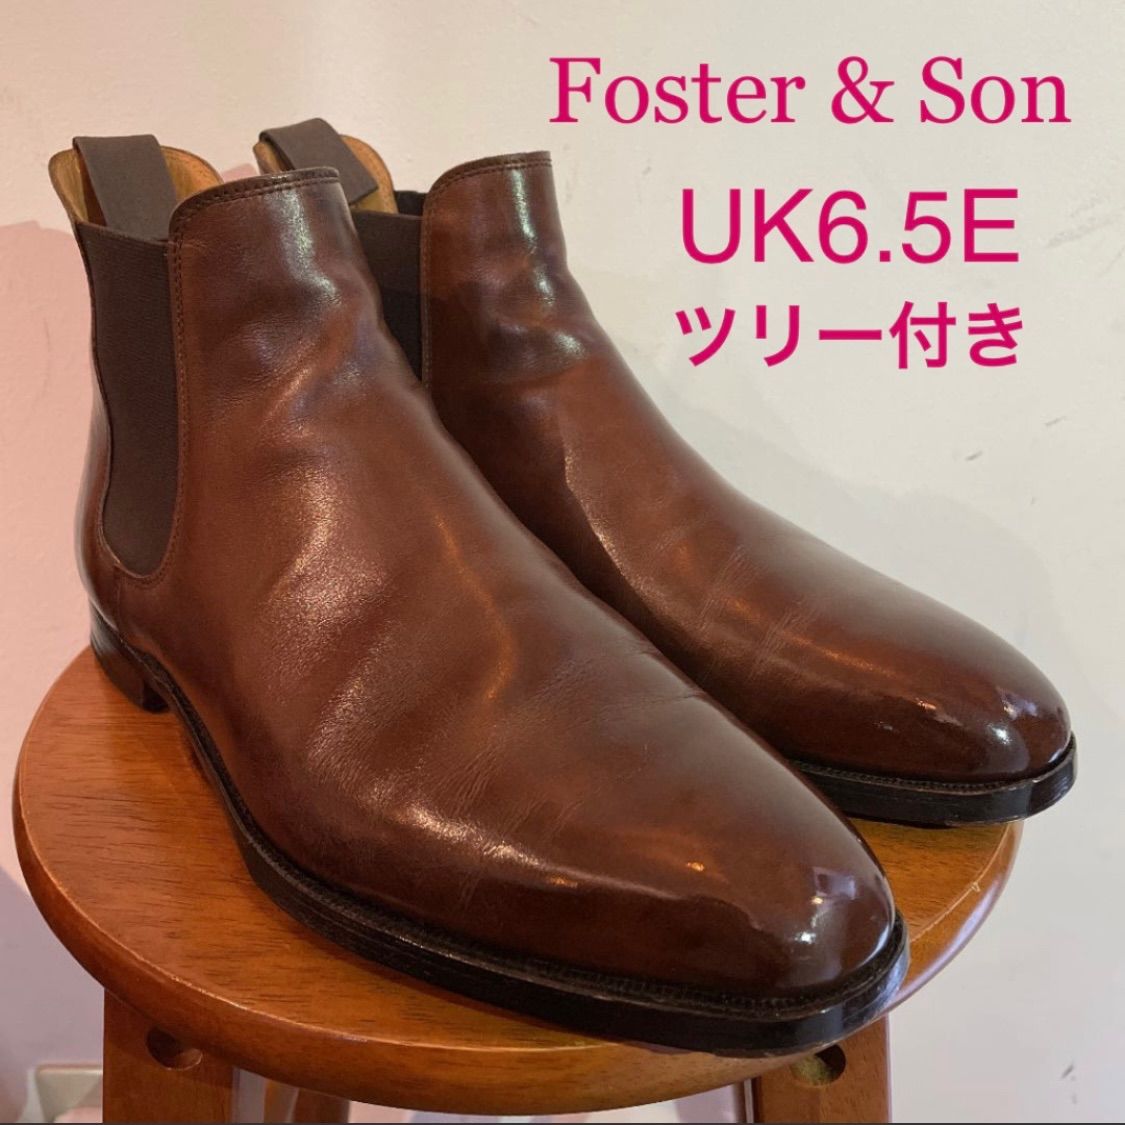 Foster & Son フォスター&サン サイドゴアブーツ UK6.5E - メルカリ